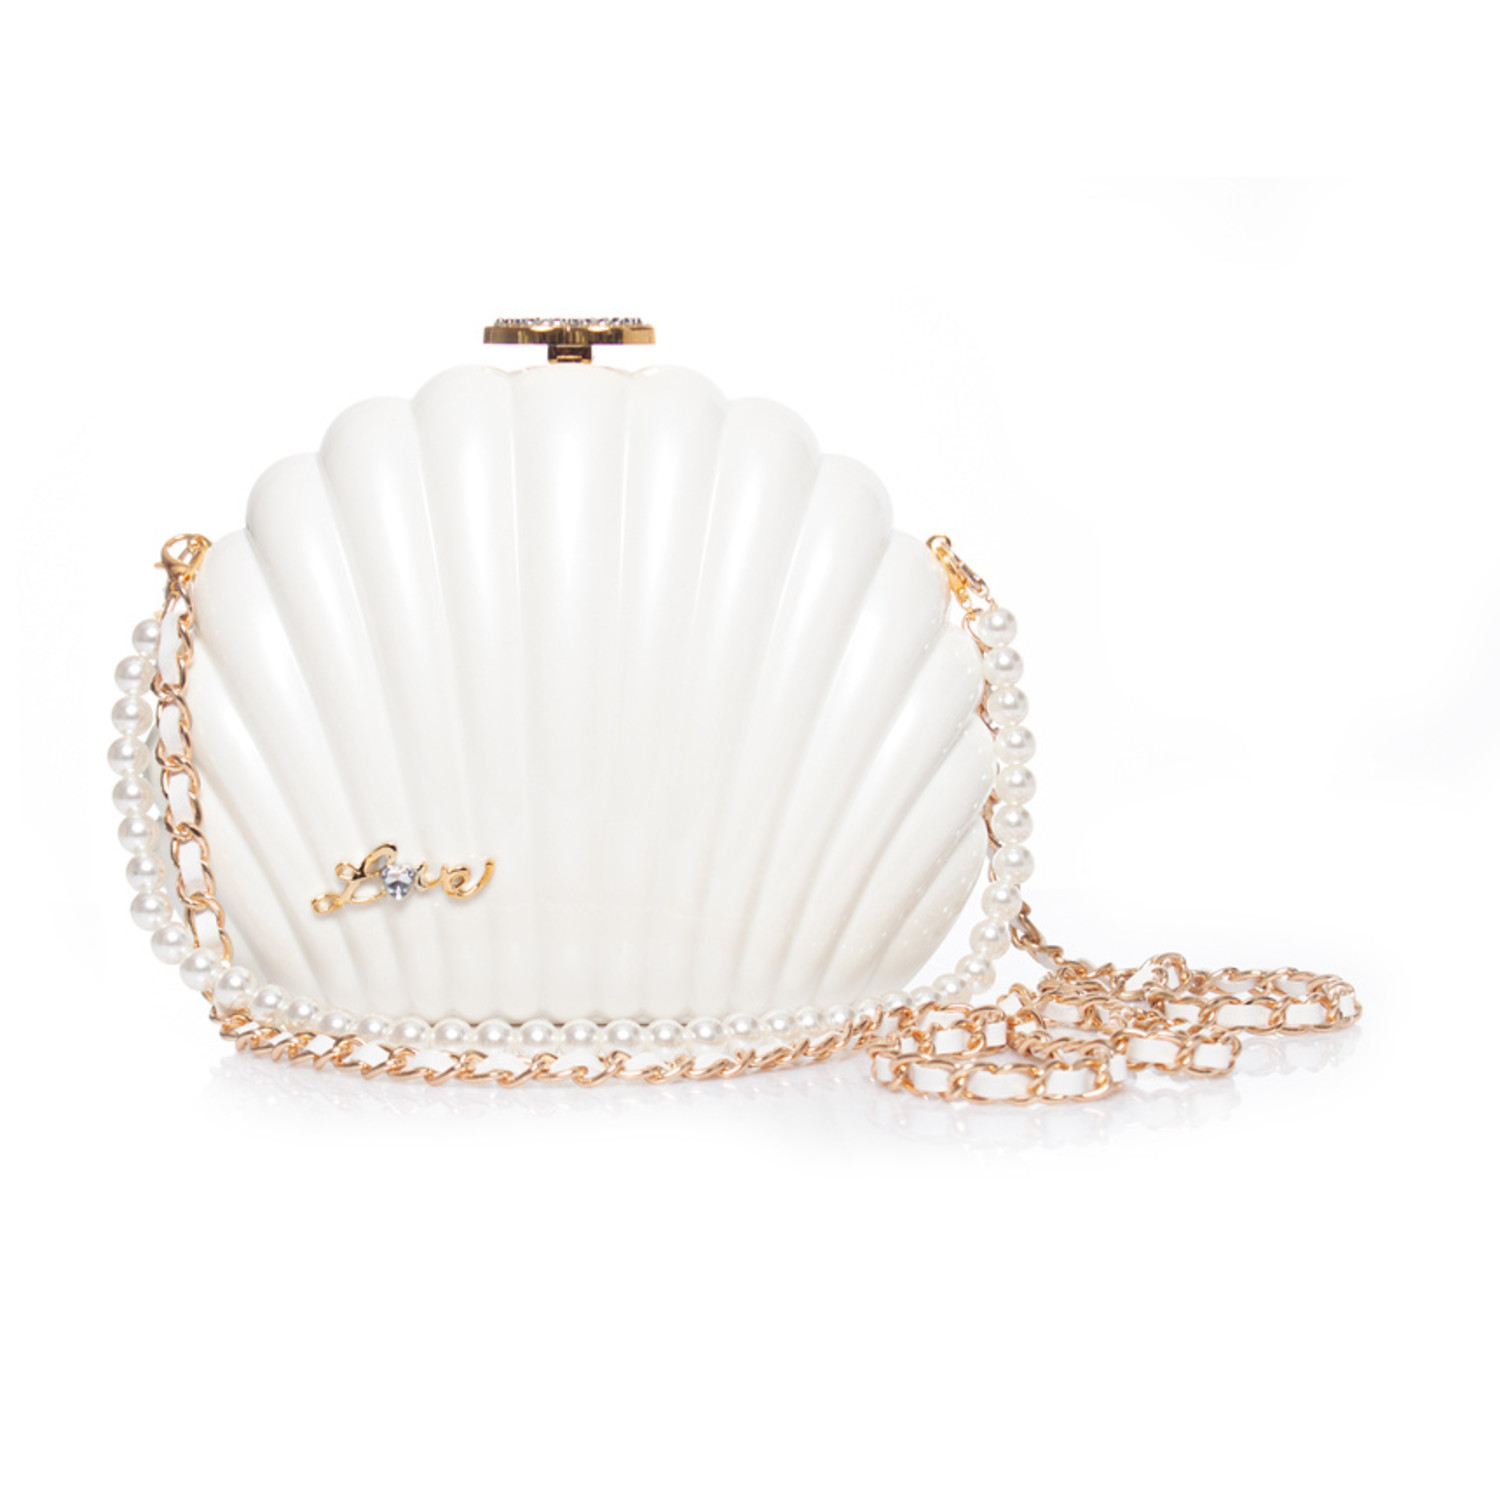 Chanel Shell Bag - 9 For Sale on 1stDibs